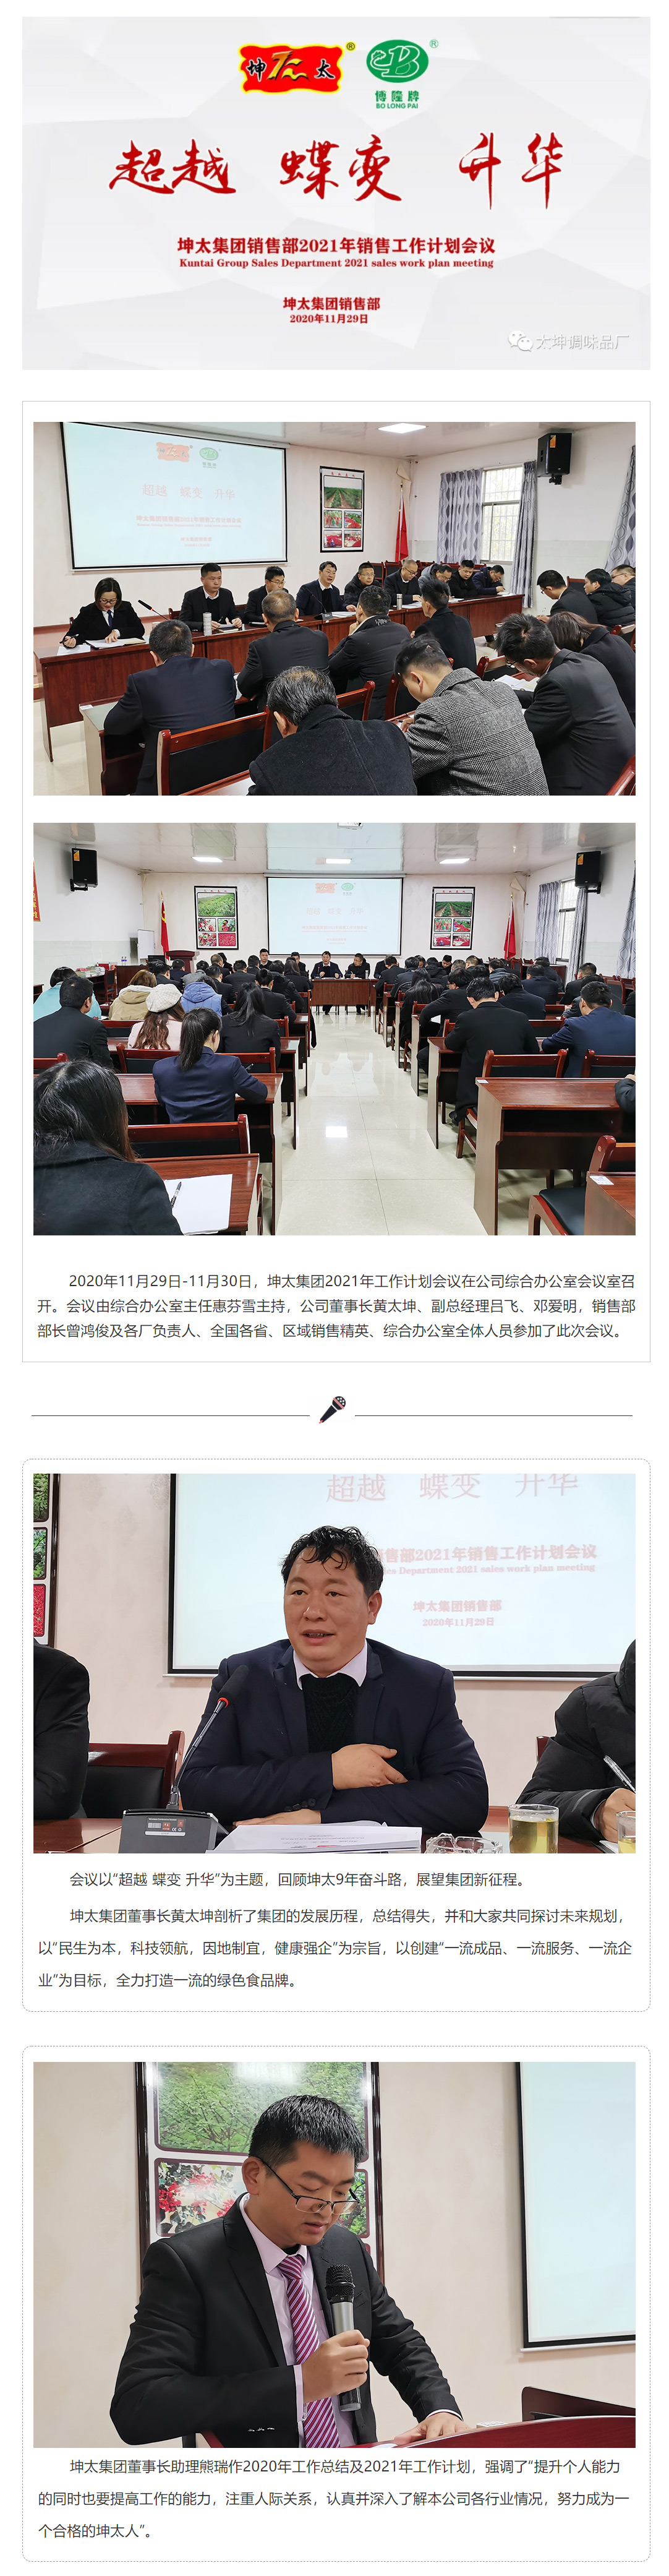 超越-蝶变-升华——坤太集团2021年销售工作计划会议_01.jpg